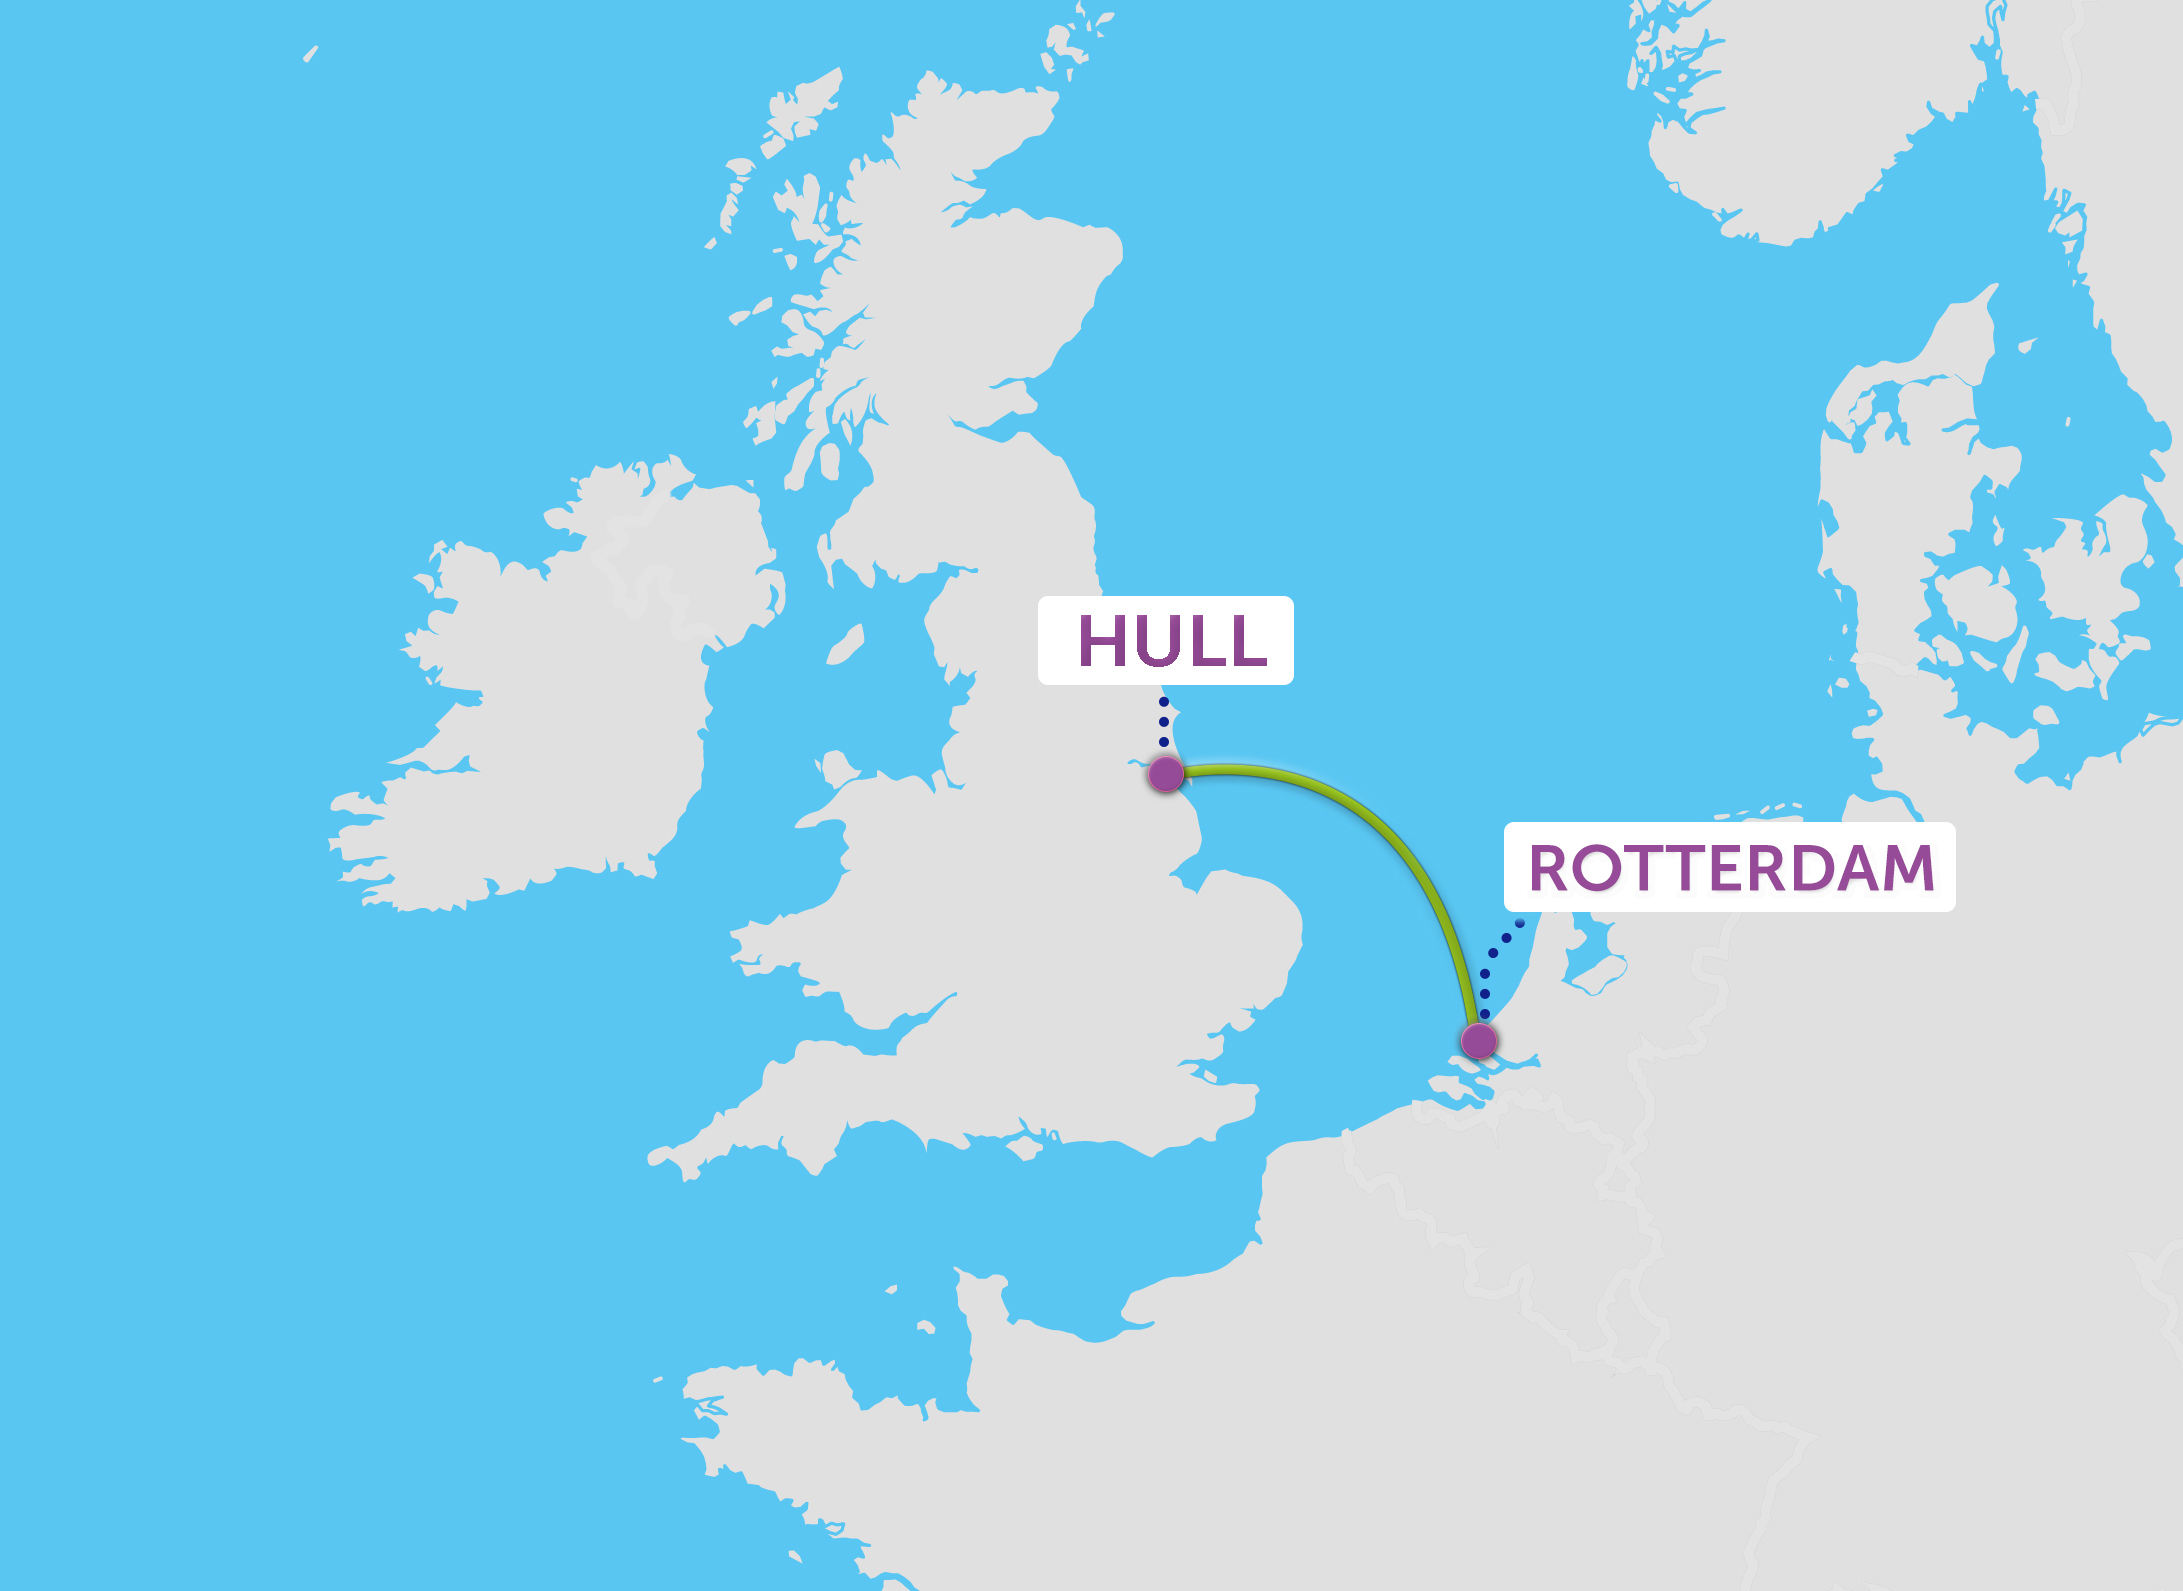 Ruïneren Bevatten Klas Neem een Ferry naar Hull | Rotterdam naar Hull | P&O Ferries